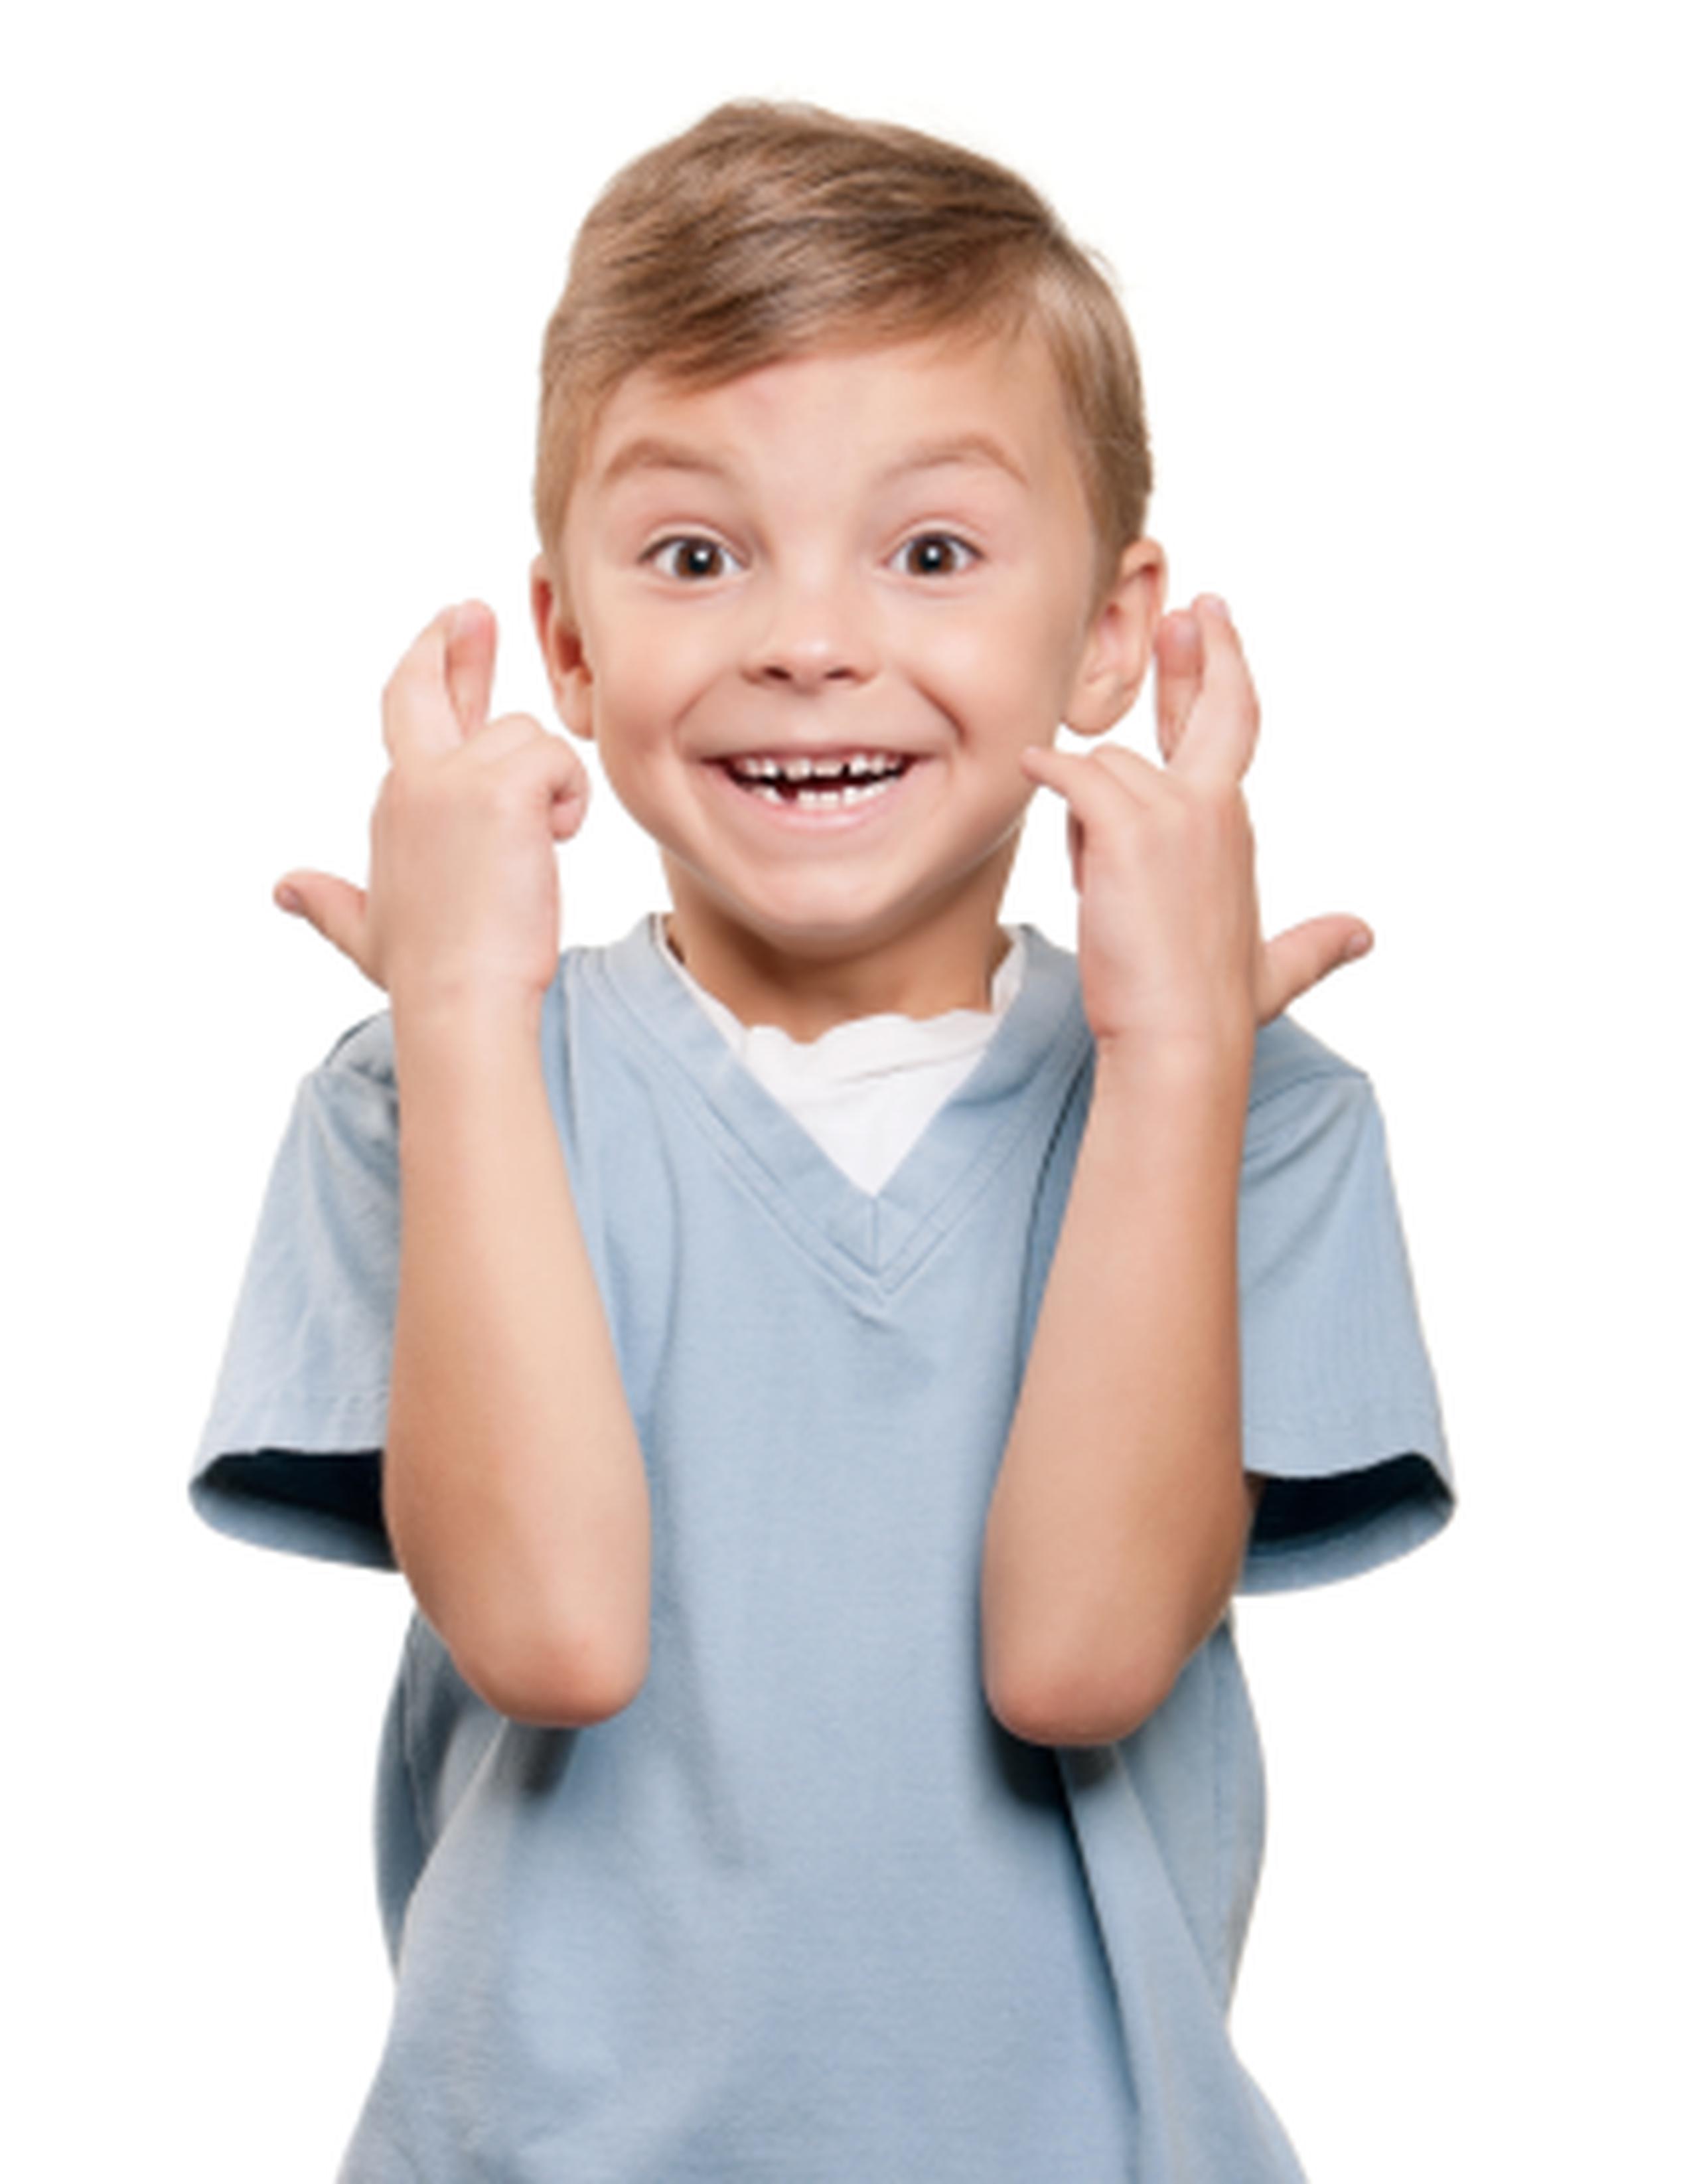 Los niños se convierten en mejores mentirosos a medida que envejecen. (Shutterstock)